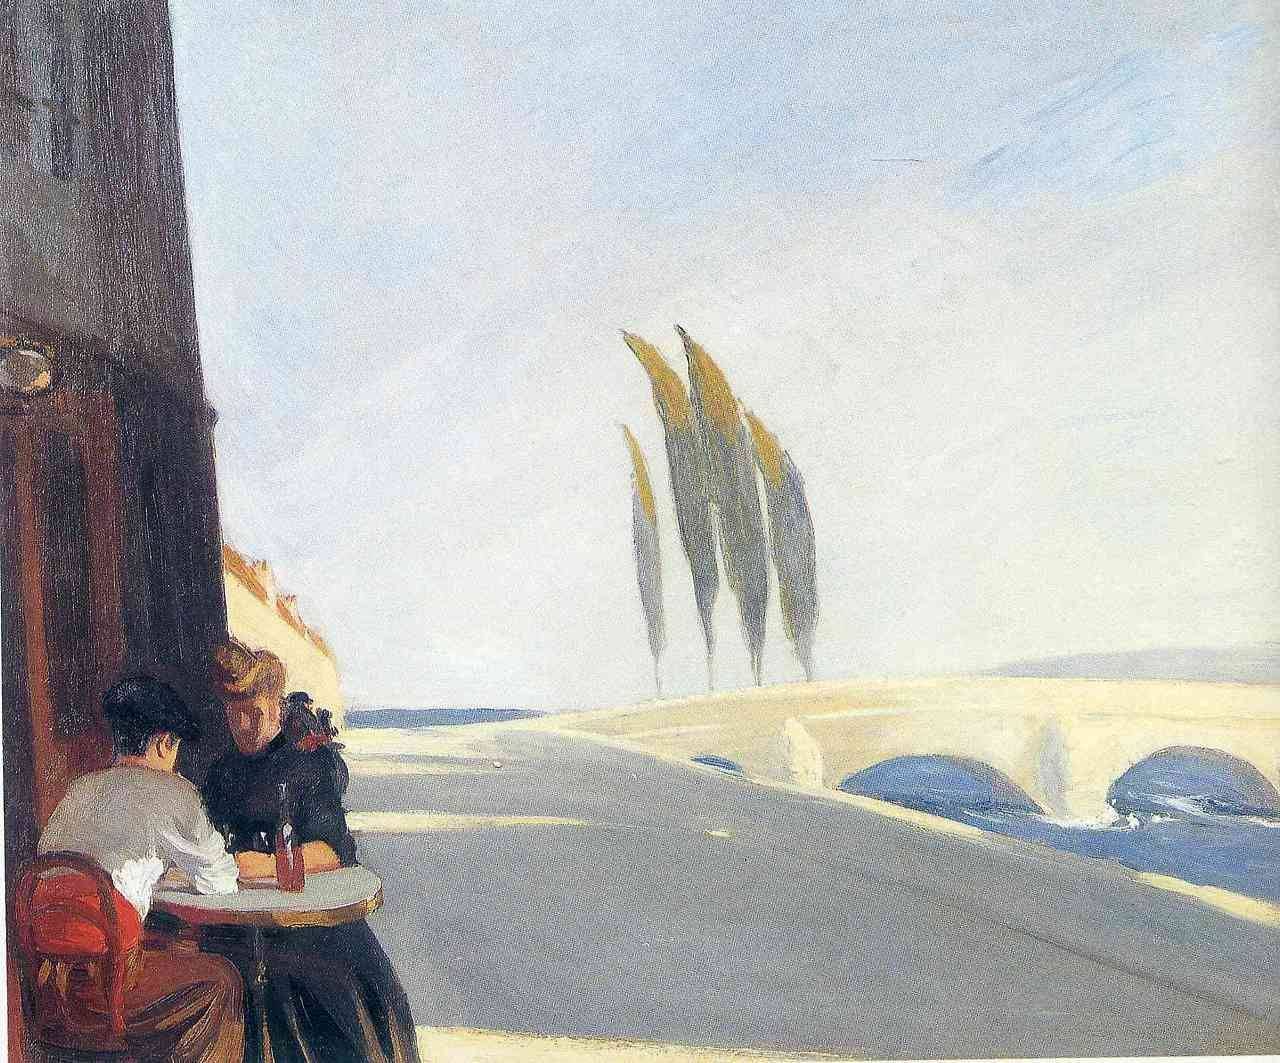 Le Bistro (The Wine Shop - Borbolt) by Edward Hopper - 1909 